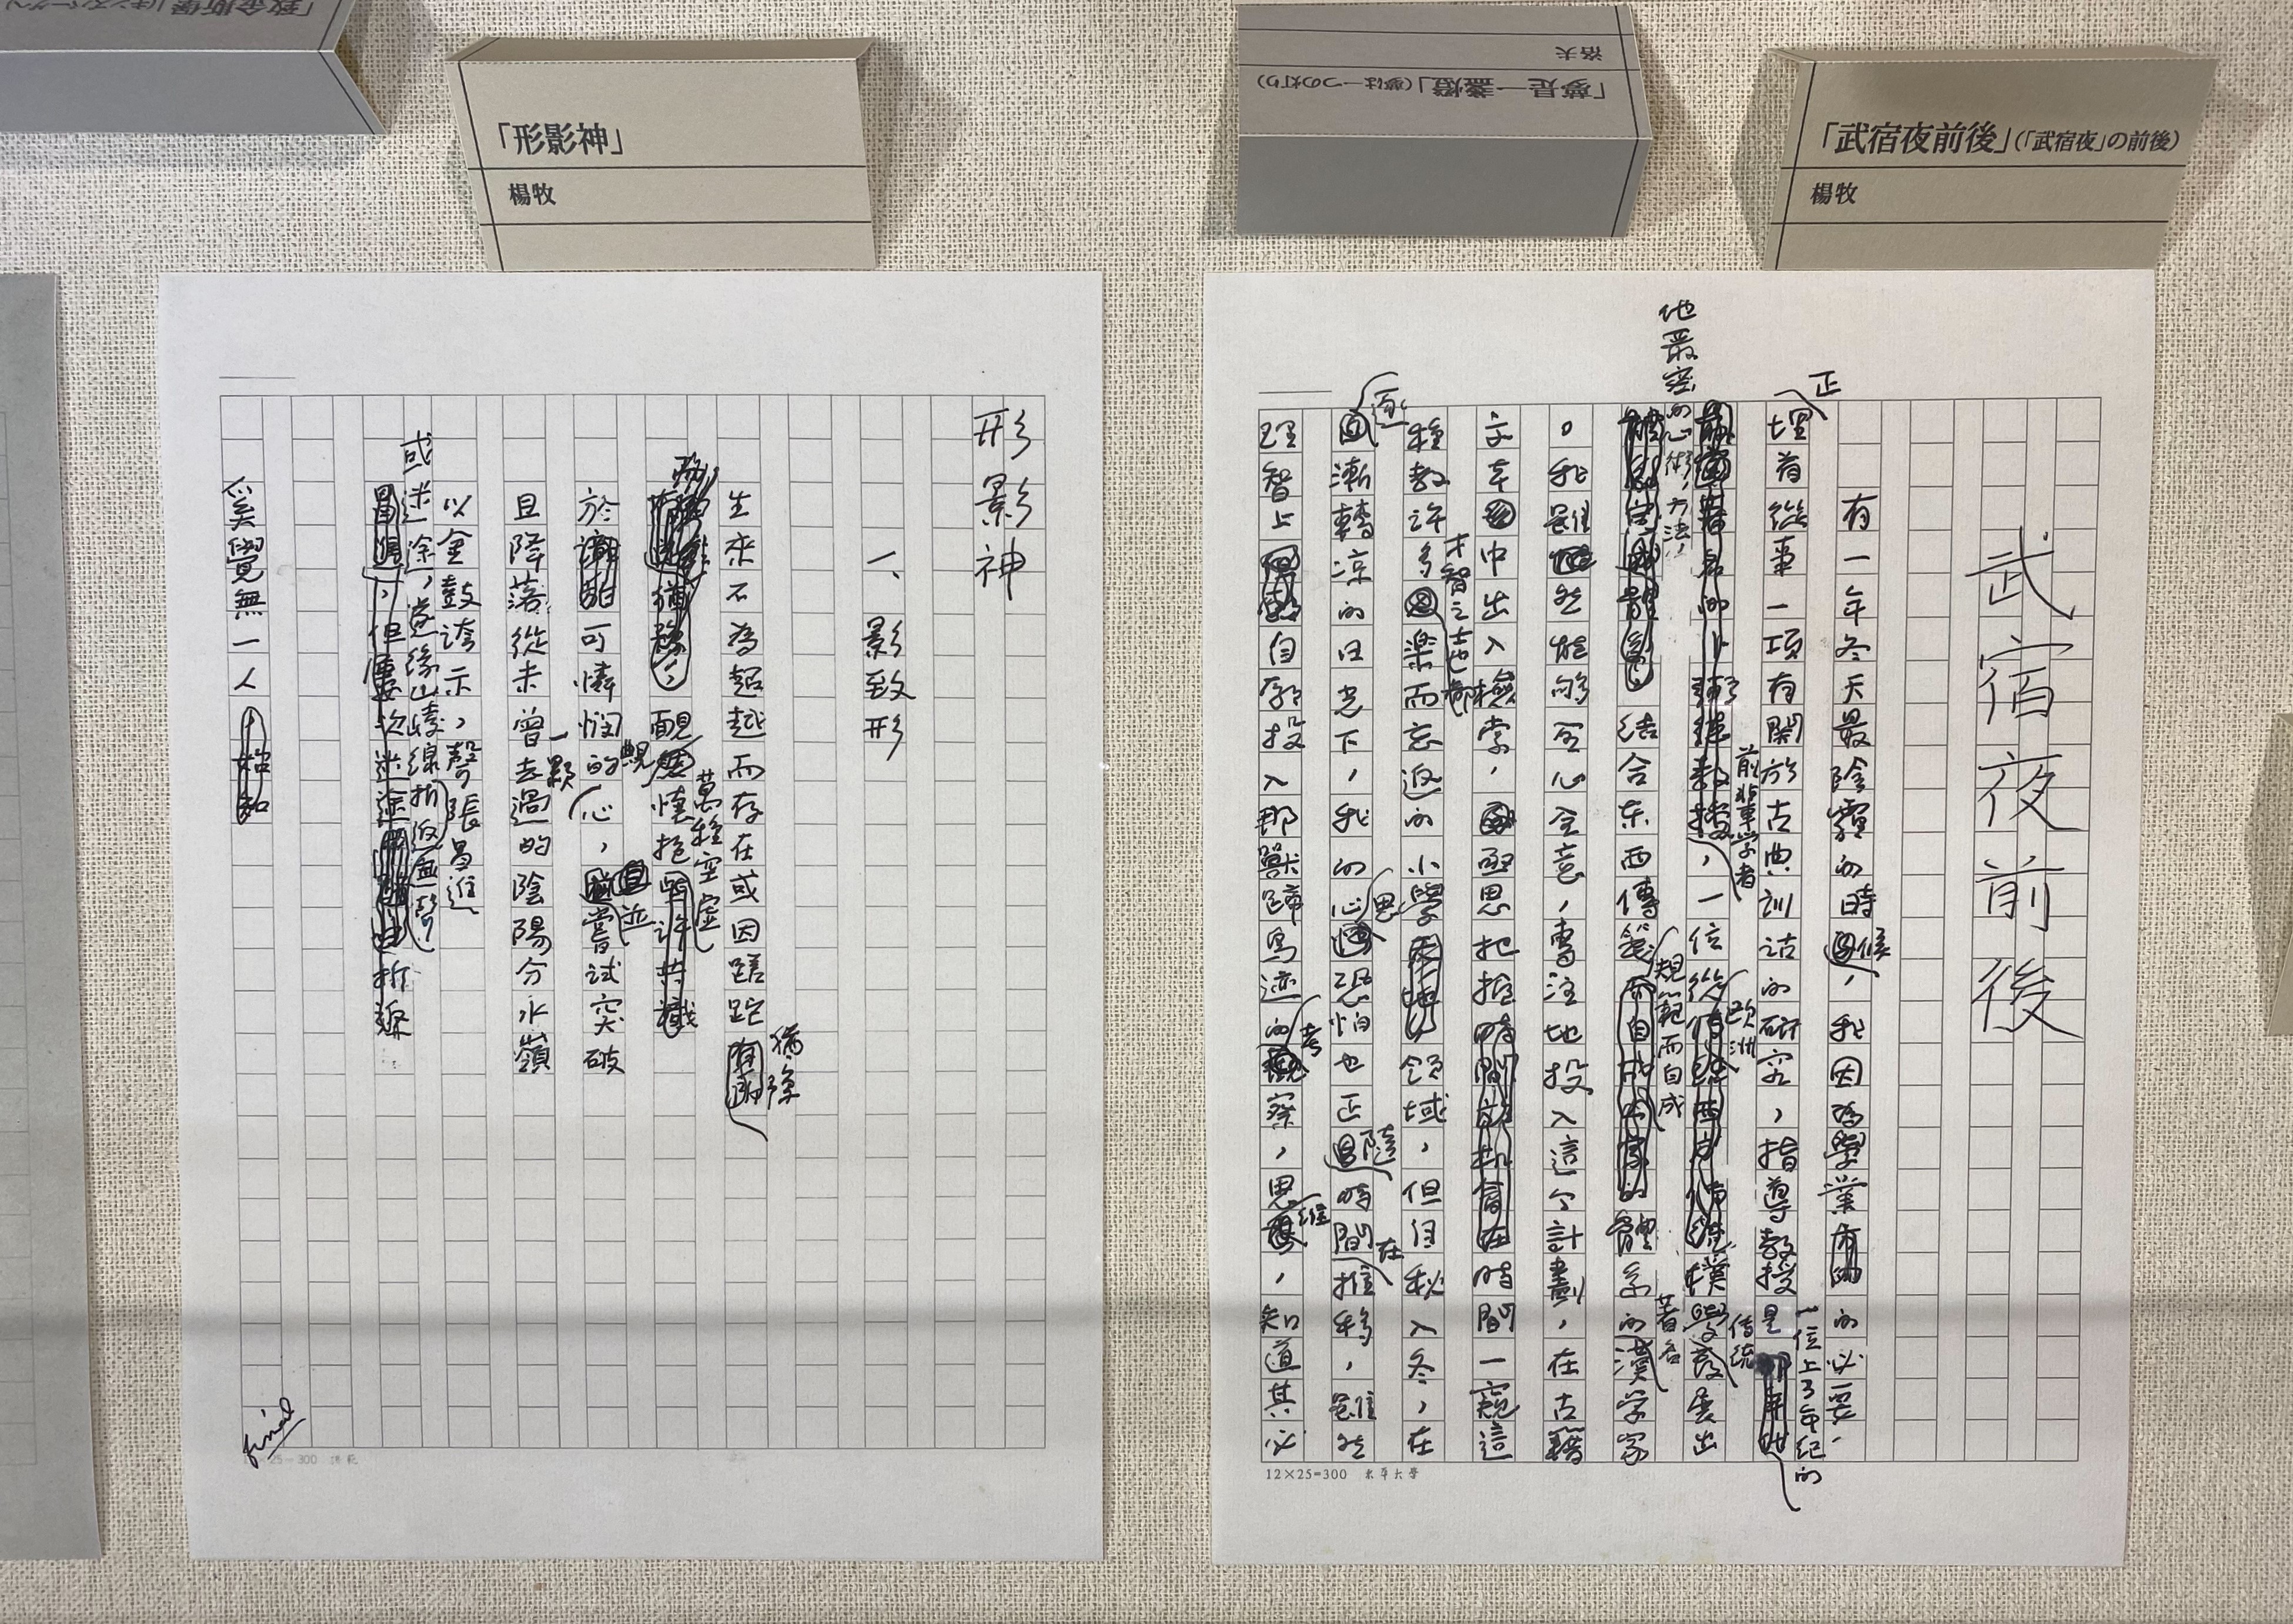 駐日台灣文化中心展出詩人楊牧及洛夫的複製手稿及舊版書、外版書等珍貴資料.jpg